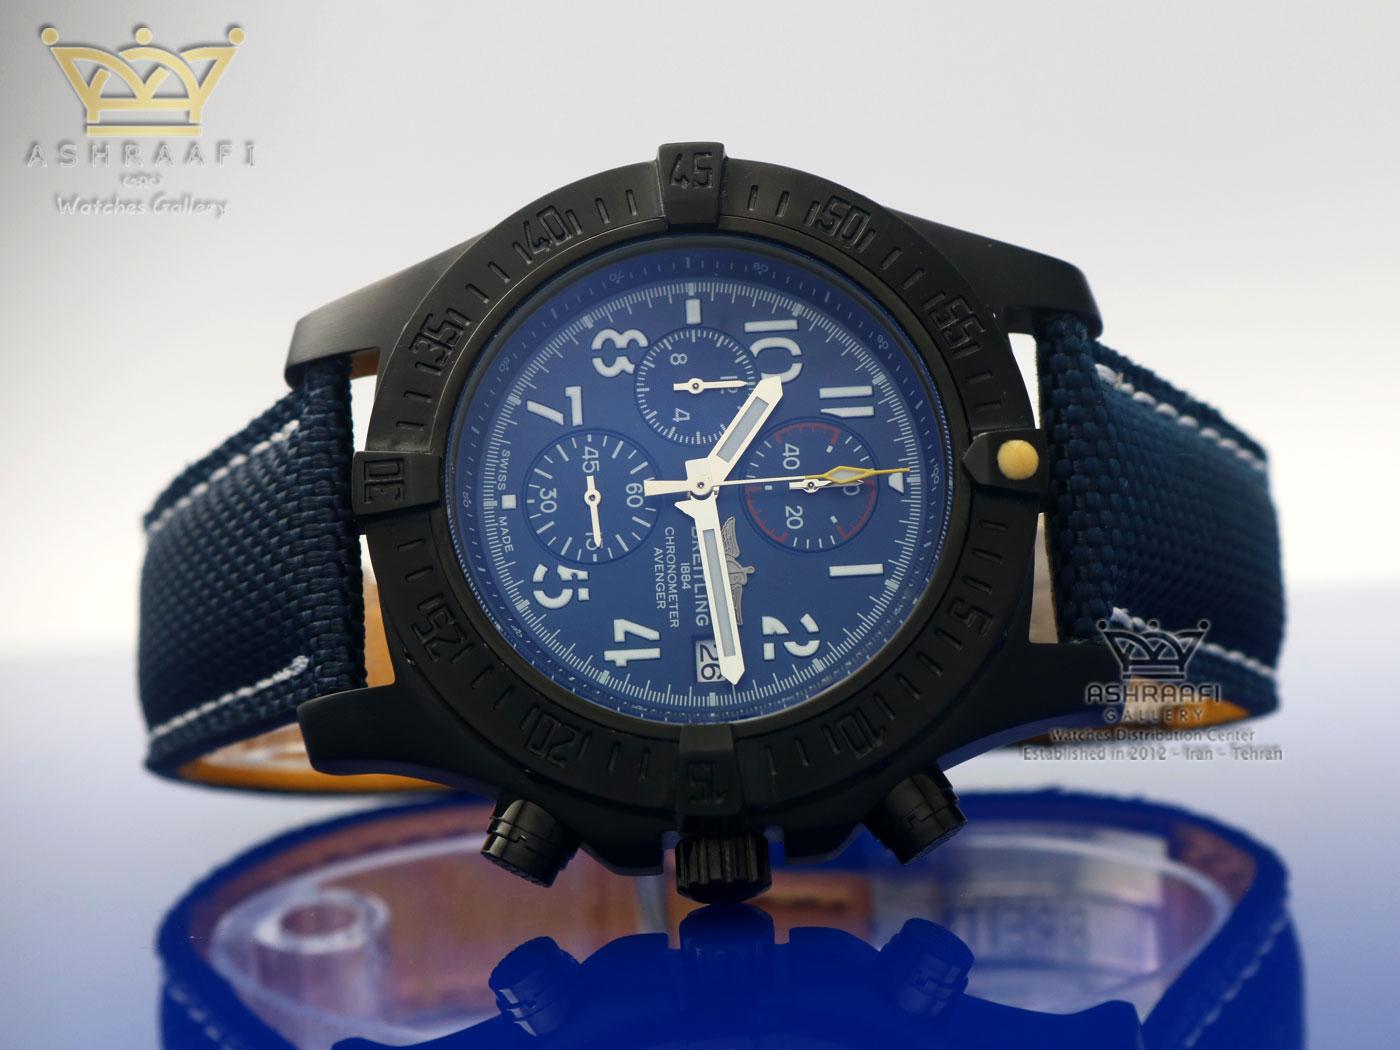 خرید ساعت برایتلینگ خلبانی Breitling Certifie A17390